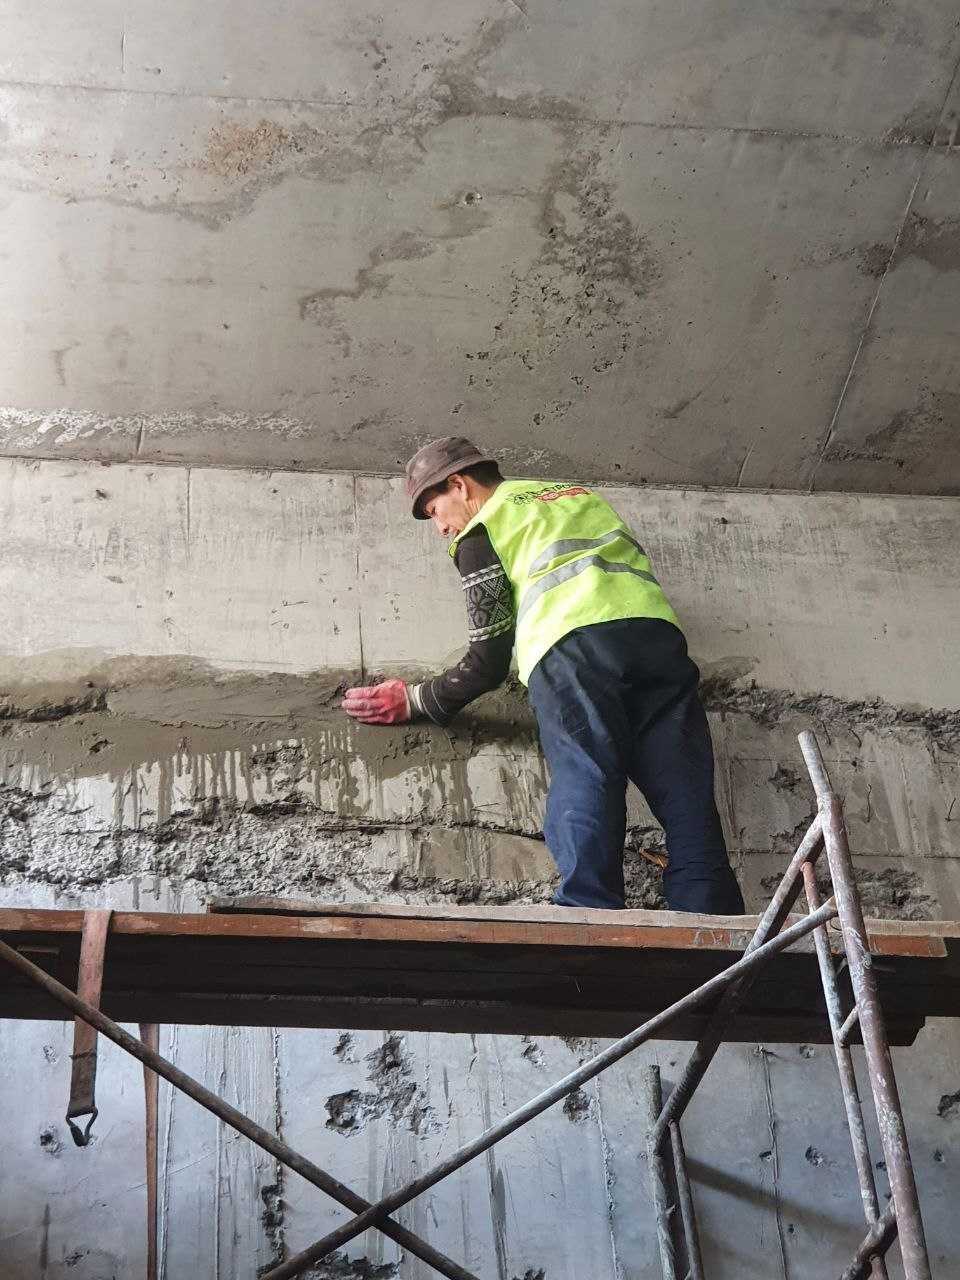 Гидропломба для остановки напорных течей в бетоне Ватерплаг Пенеплаг